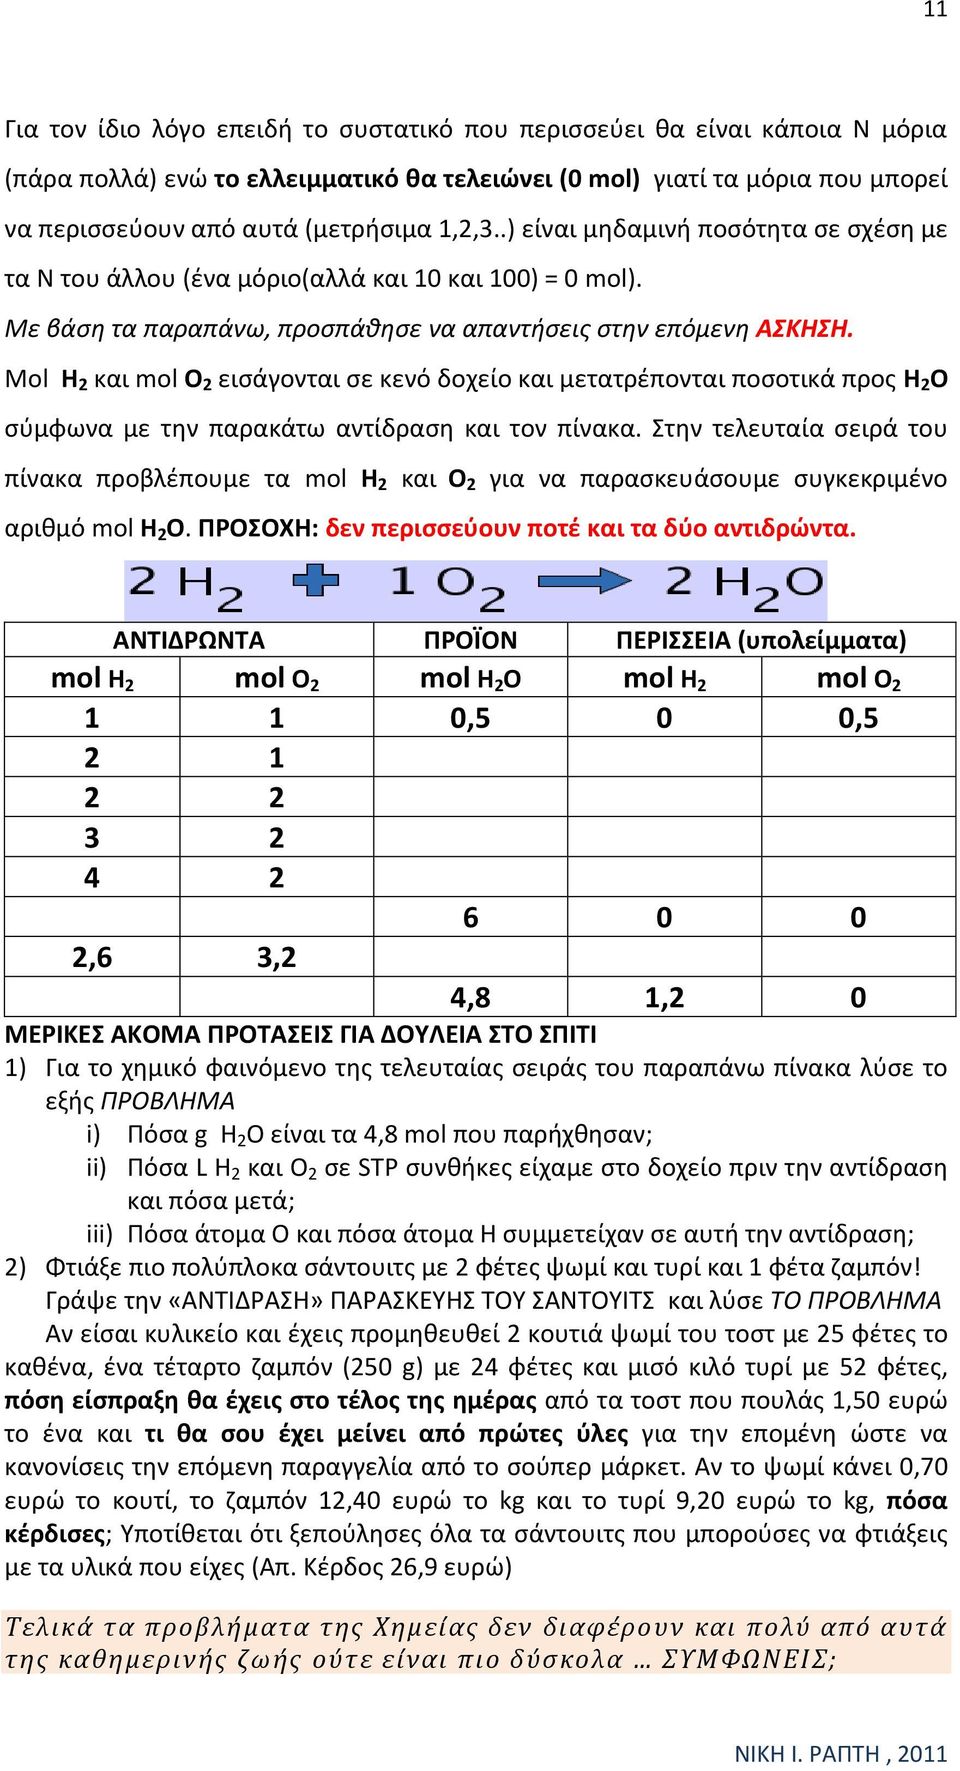 Μol H2 και mol O2 εισάγονται σε κενό δοχείο και μετατρέπονται ποσοτικά προς H2O σύμφωνα με την παρακάτω αντίδραση και τον πίνακα.